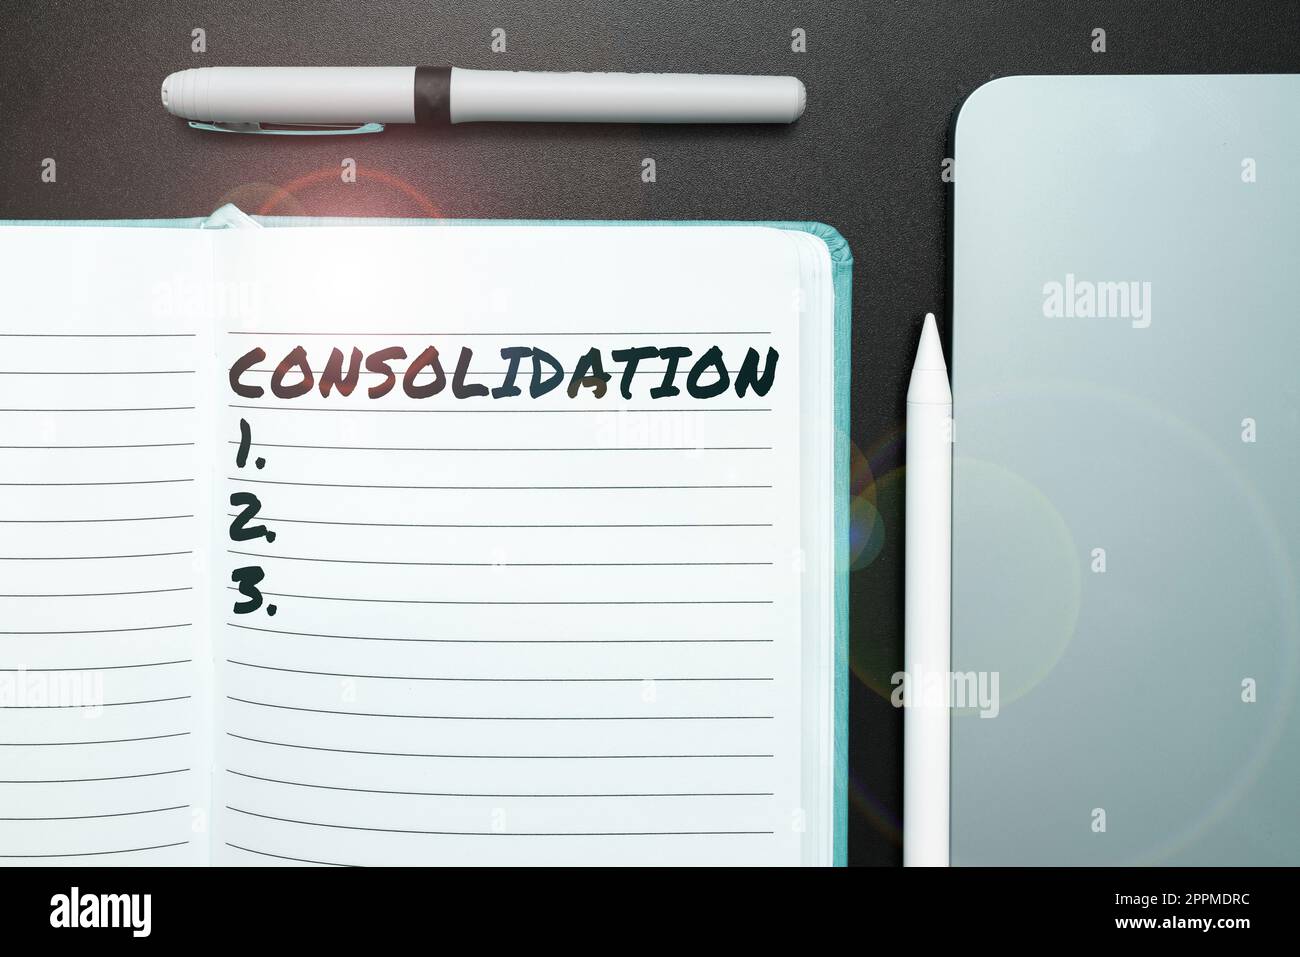 Handgeschriebenes Schild „Consolidation“. Geschäftsansatz Aktion oder Prozess, um etwas stärkeres oder solideres zu machen Stockfoto